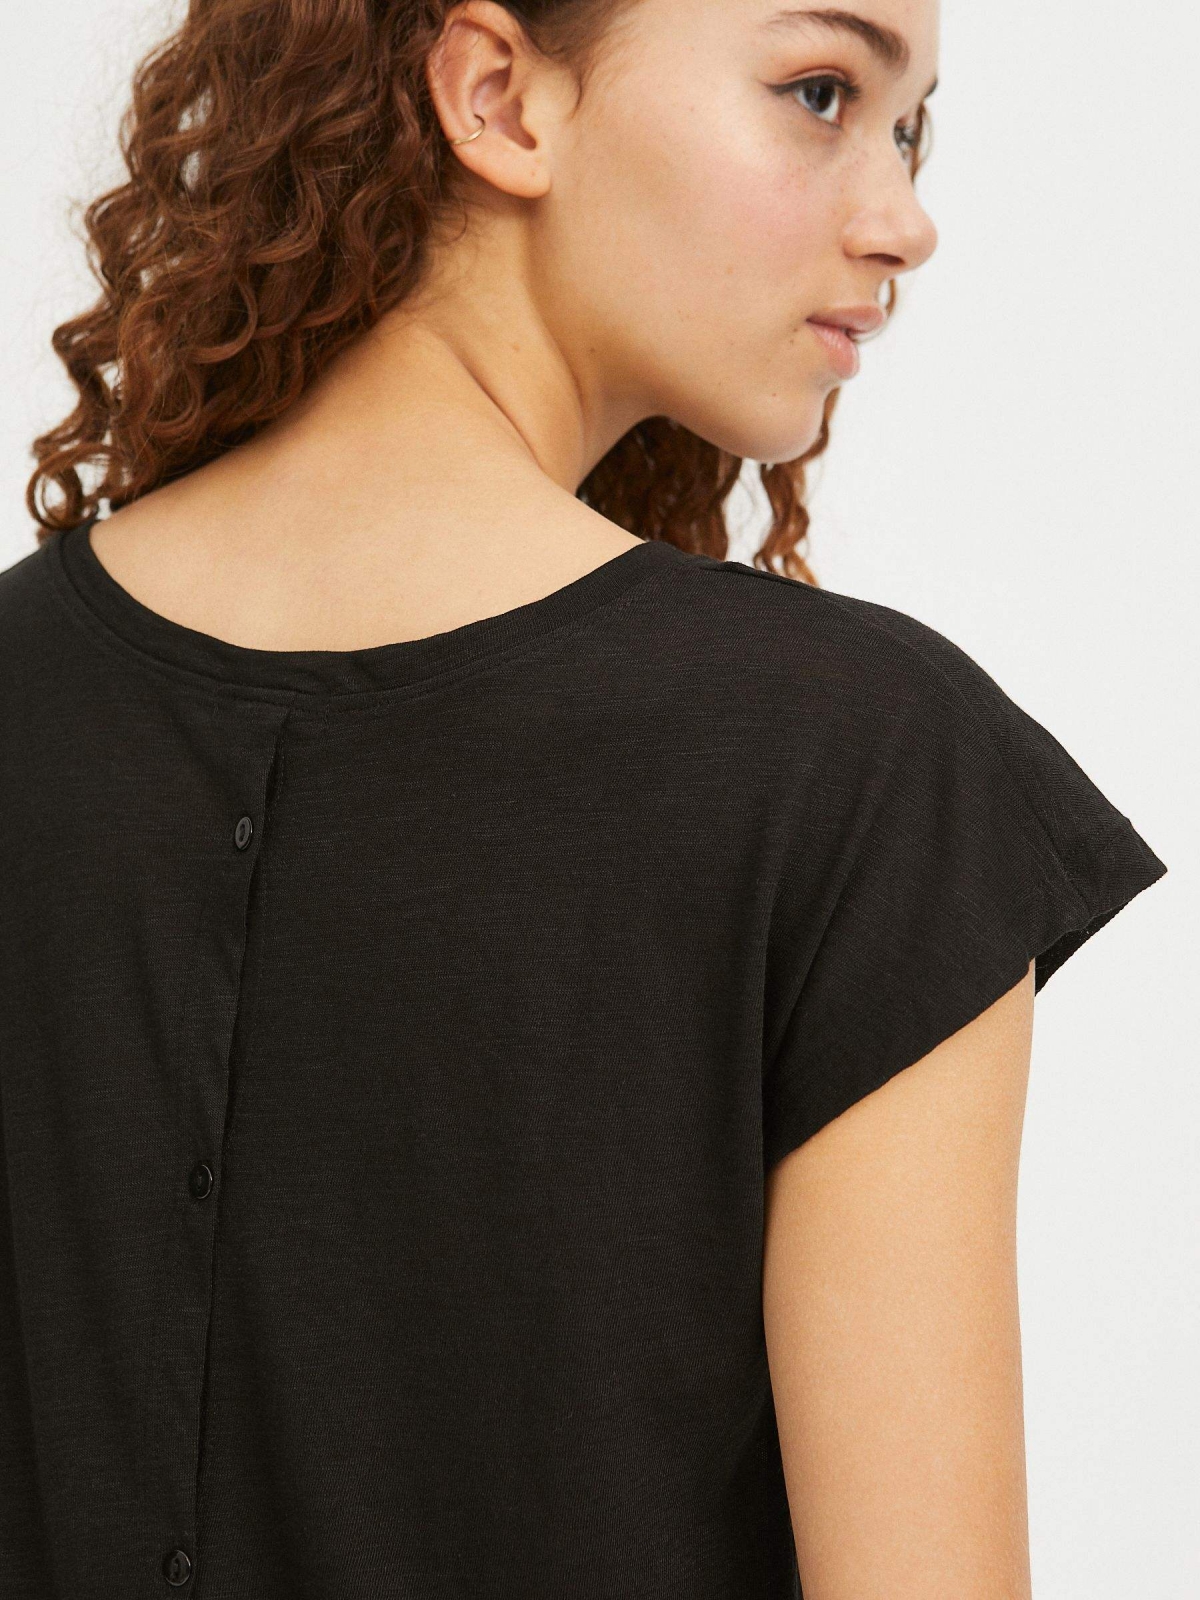 Camiseta botones espalda negro vista detalle